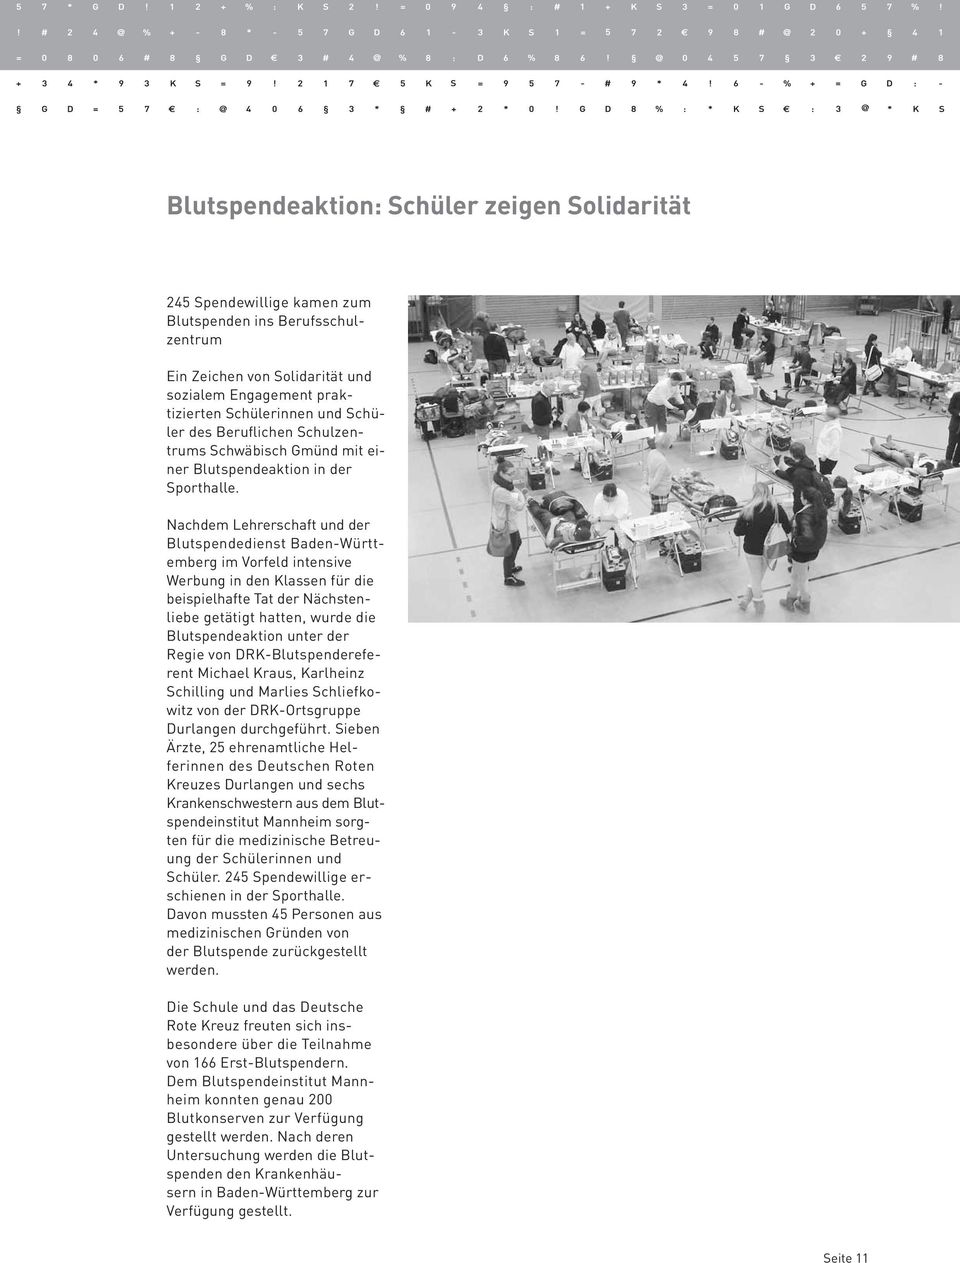 Nachdem Lehrerschaft und der Blutspendedienst Baden-Württemberg im Vorfeld intensive Werbung in den Klassen für die beispielhafte Tat der Nächstenliebe getätigt hatten, wurde die Blutspendeaktion